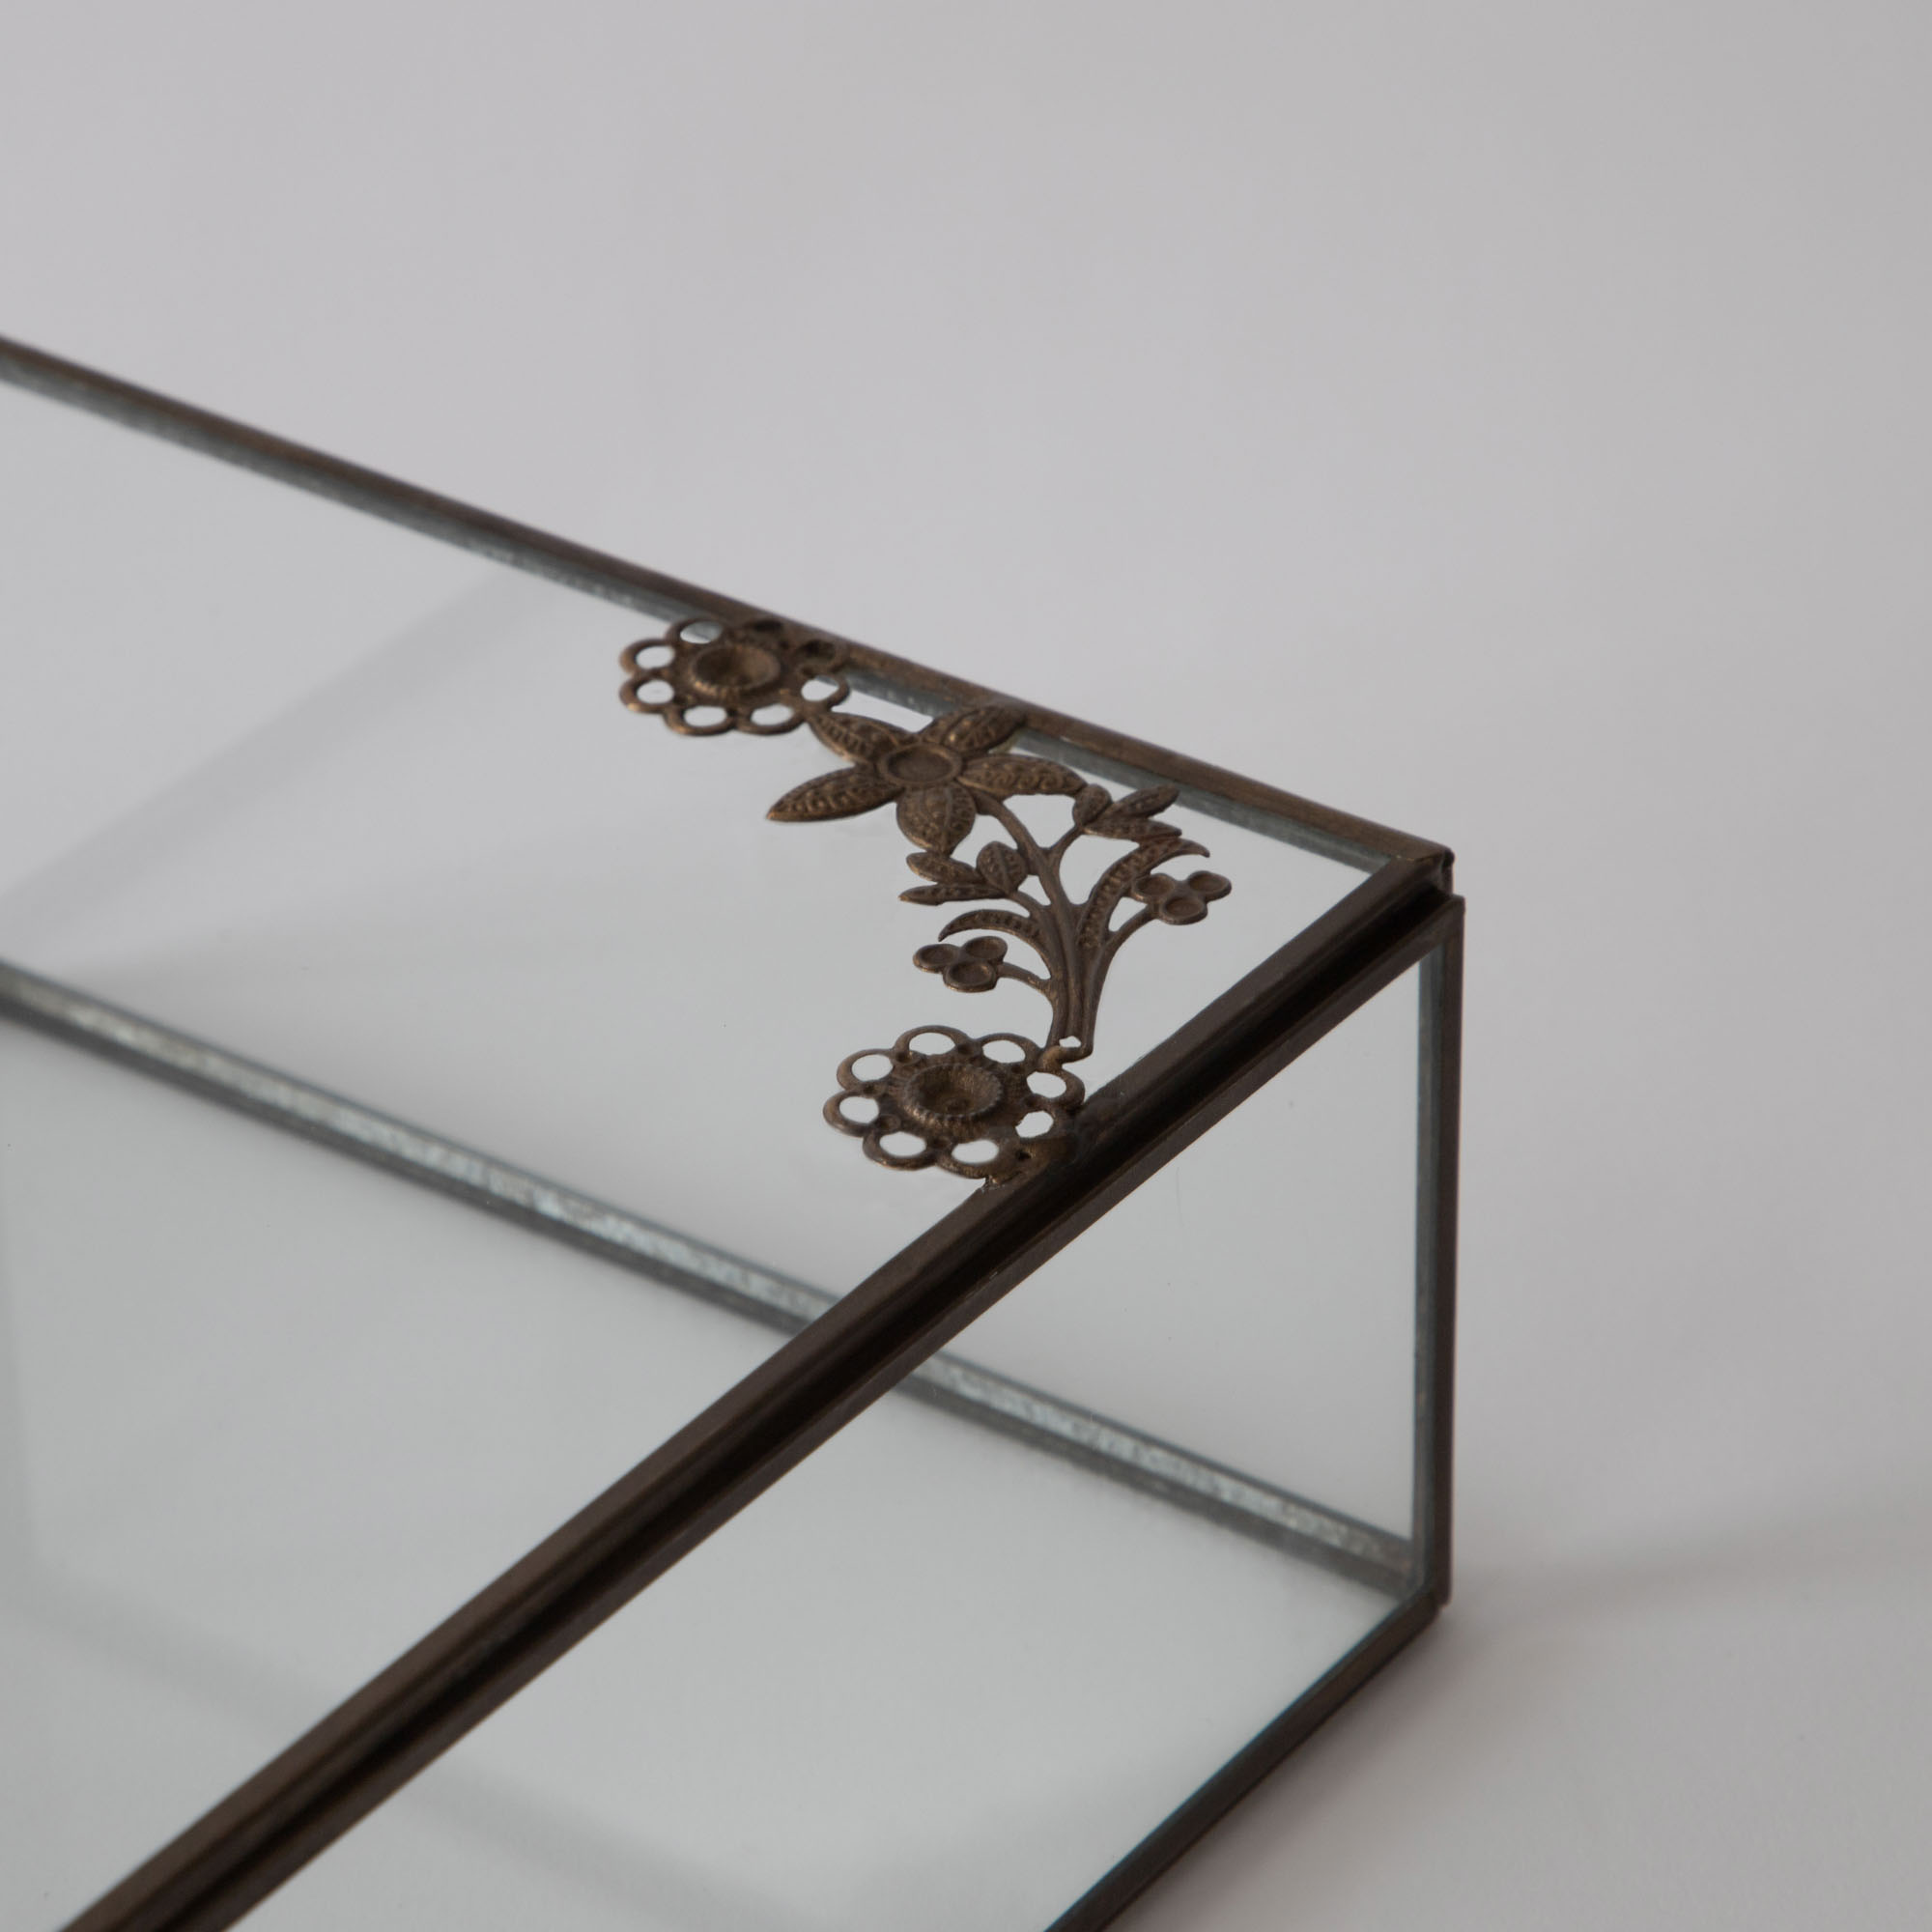 Amore Keepsakes Glass Box - Aged Antique Finish